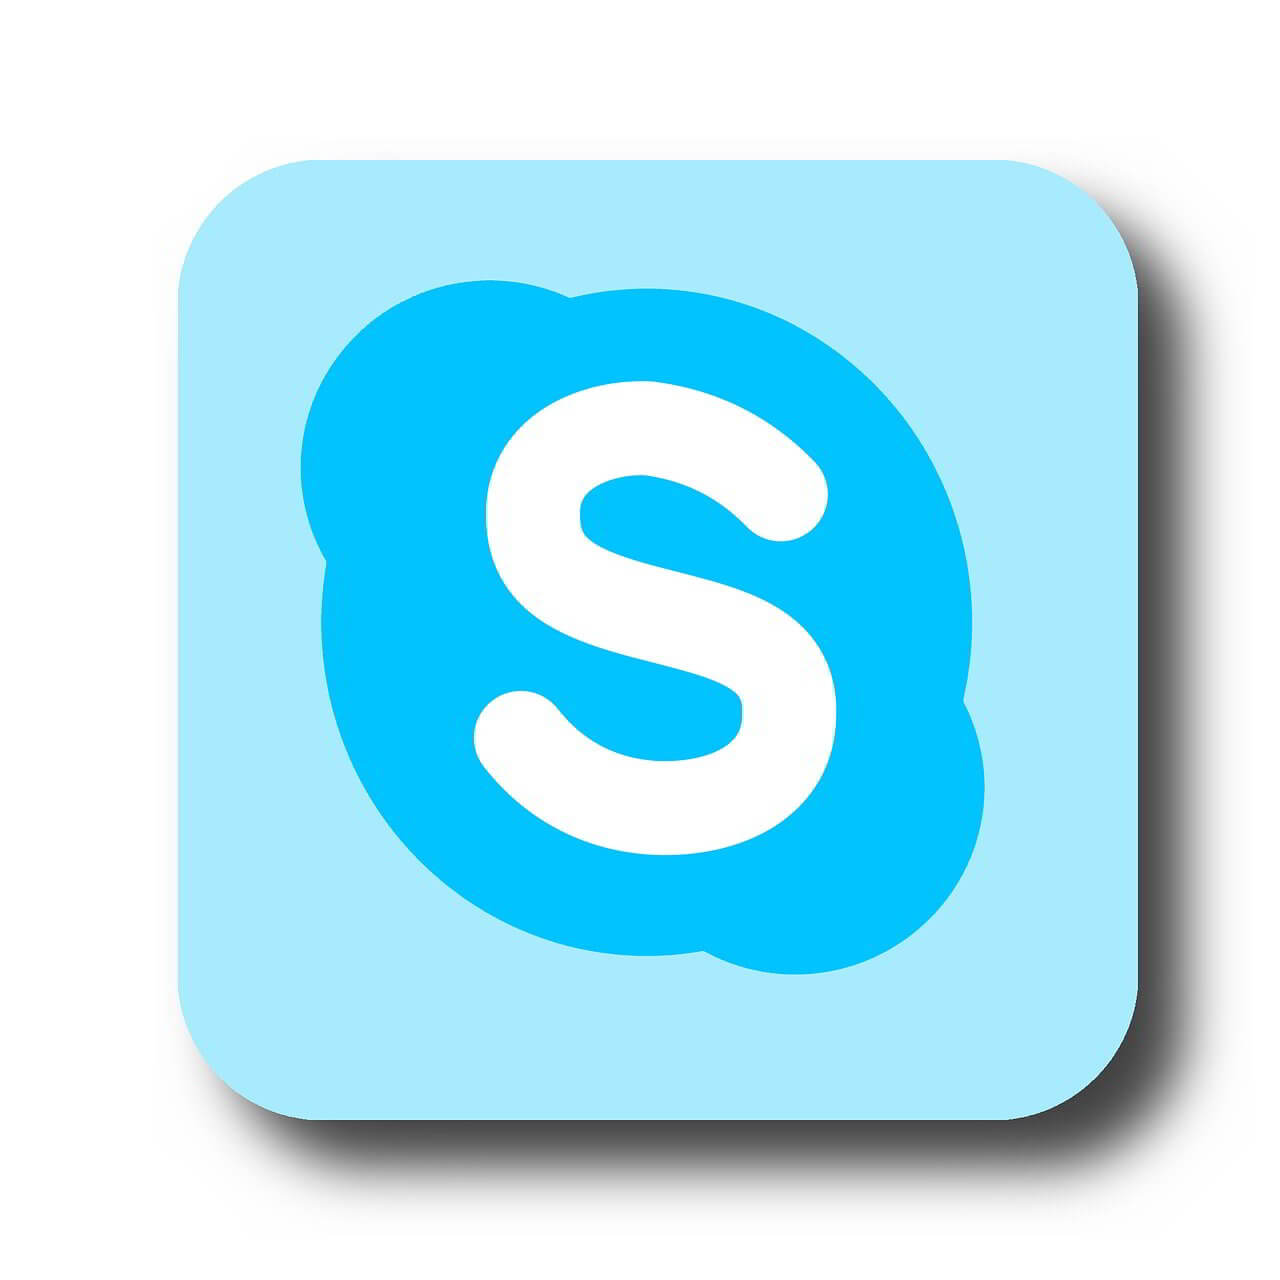 ¿Cómo puedo actualizar una versión antigua de Skype para Windows 7?